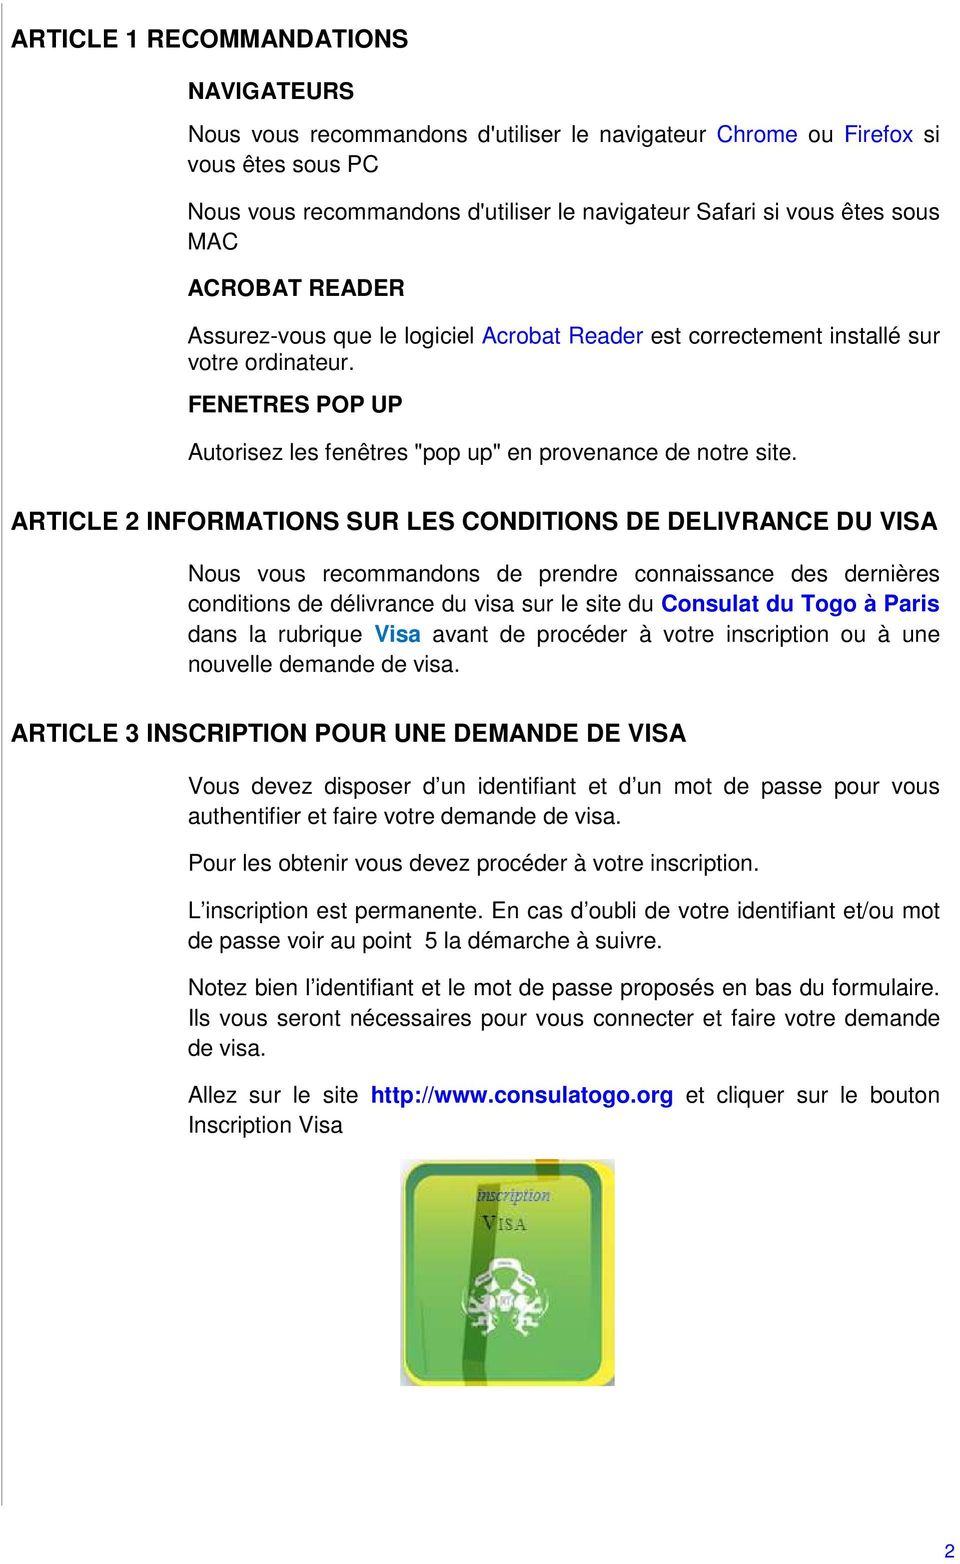 ARTICLE 2 INFORMATIONS SUR LES CONDITIONS DE DELIVRANCE DU VISA Nous vous recommandons de prendre connaissance des dernières conditions de délivrance du visa sur le site du Consulat du Togo à Paris